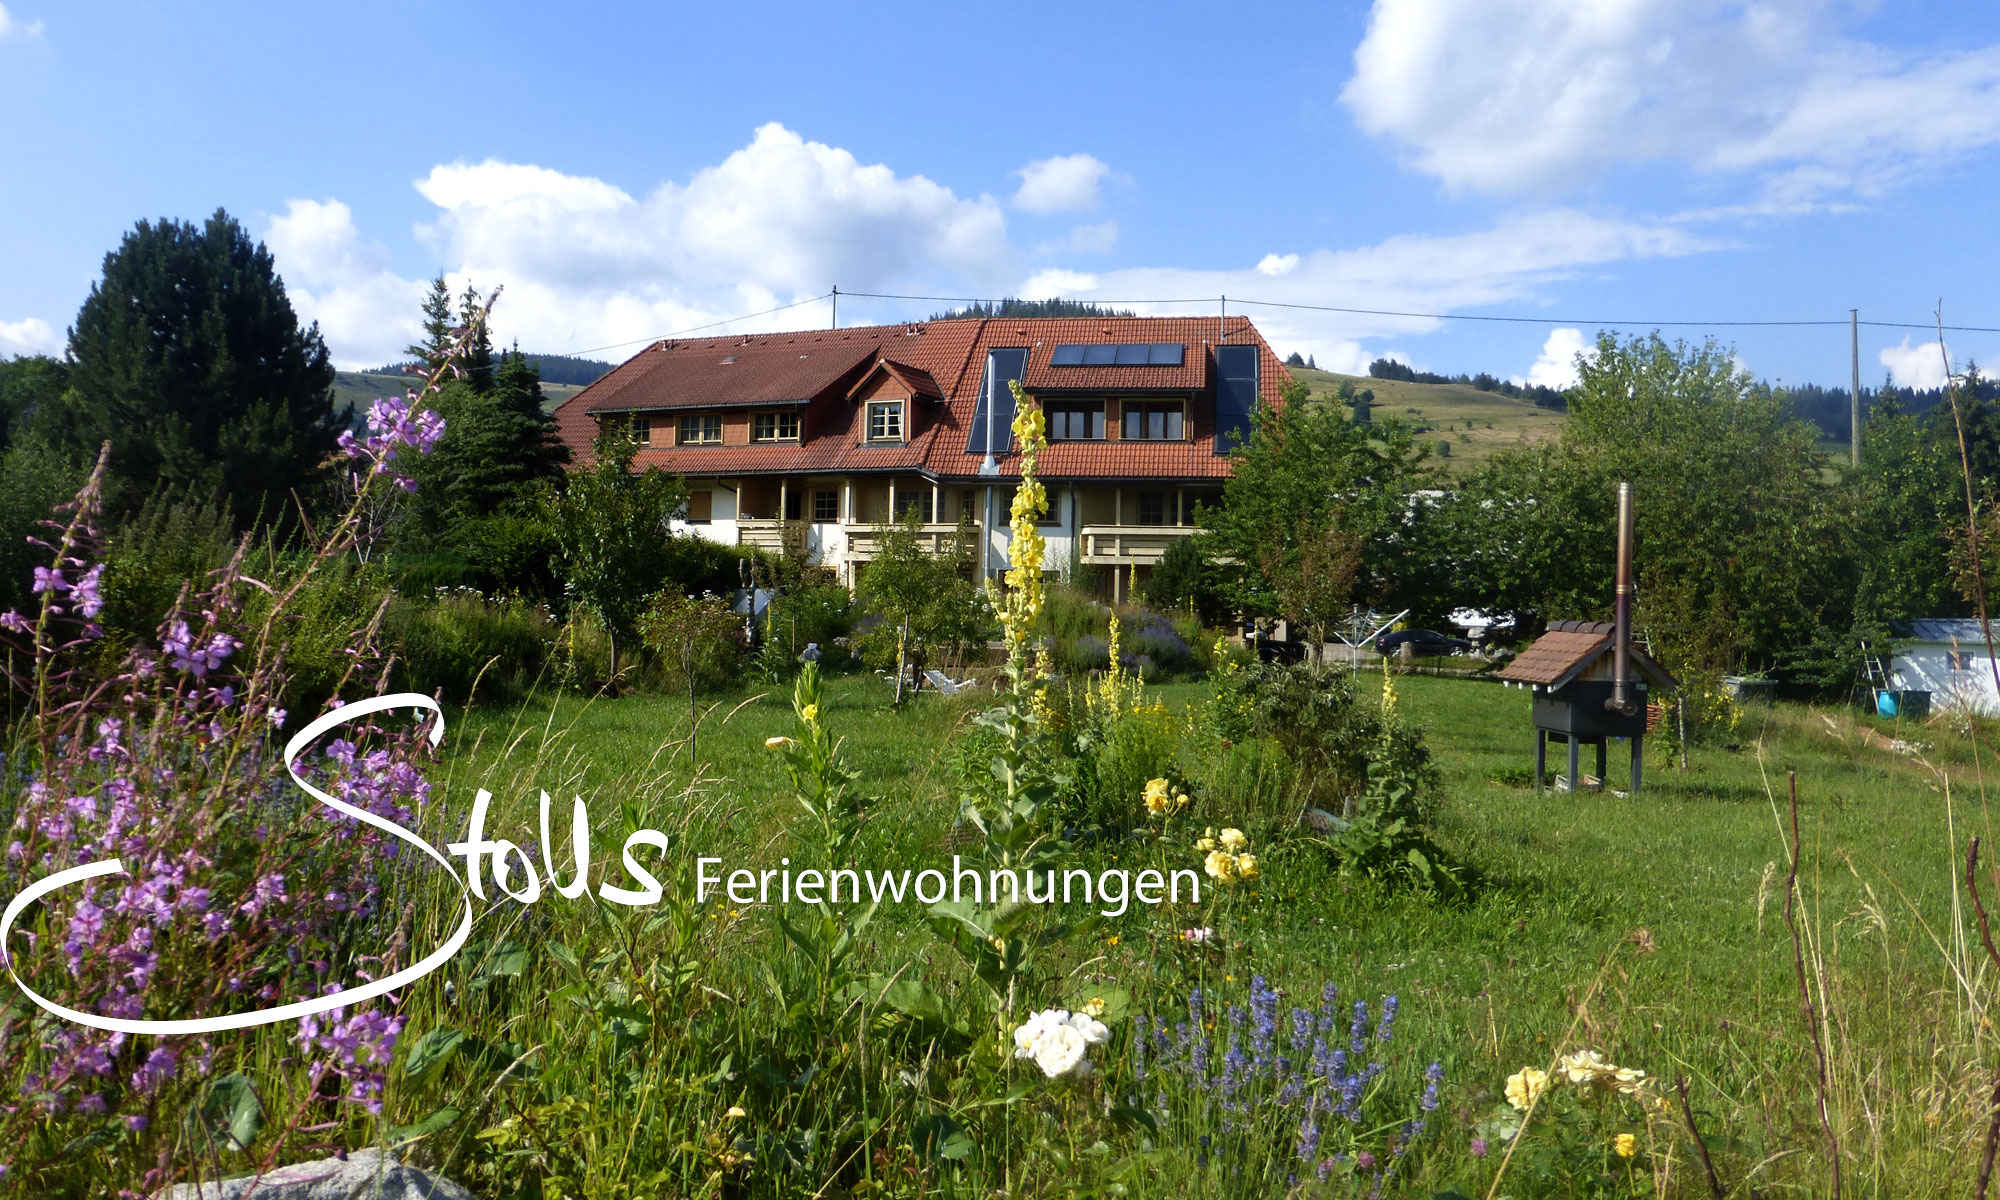 Stolls Ferienwohnungen in Bernau im Schwarzwald